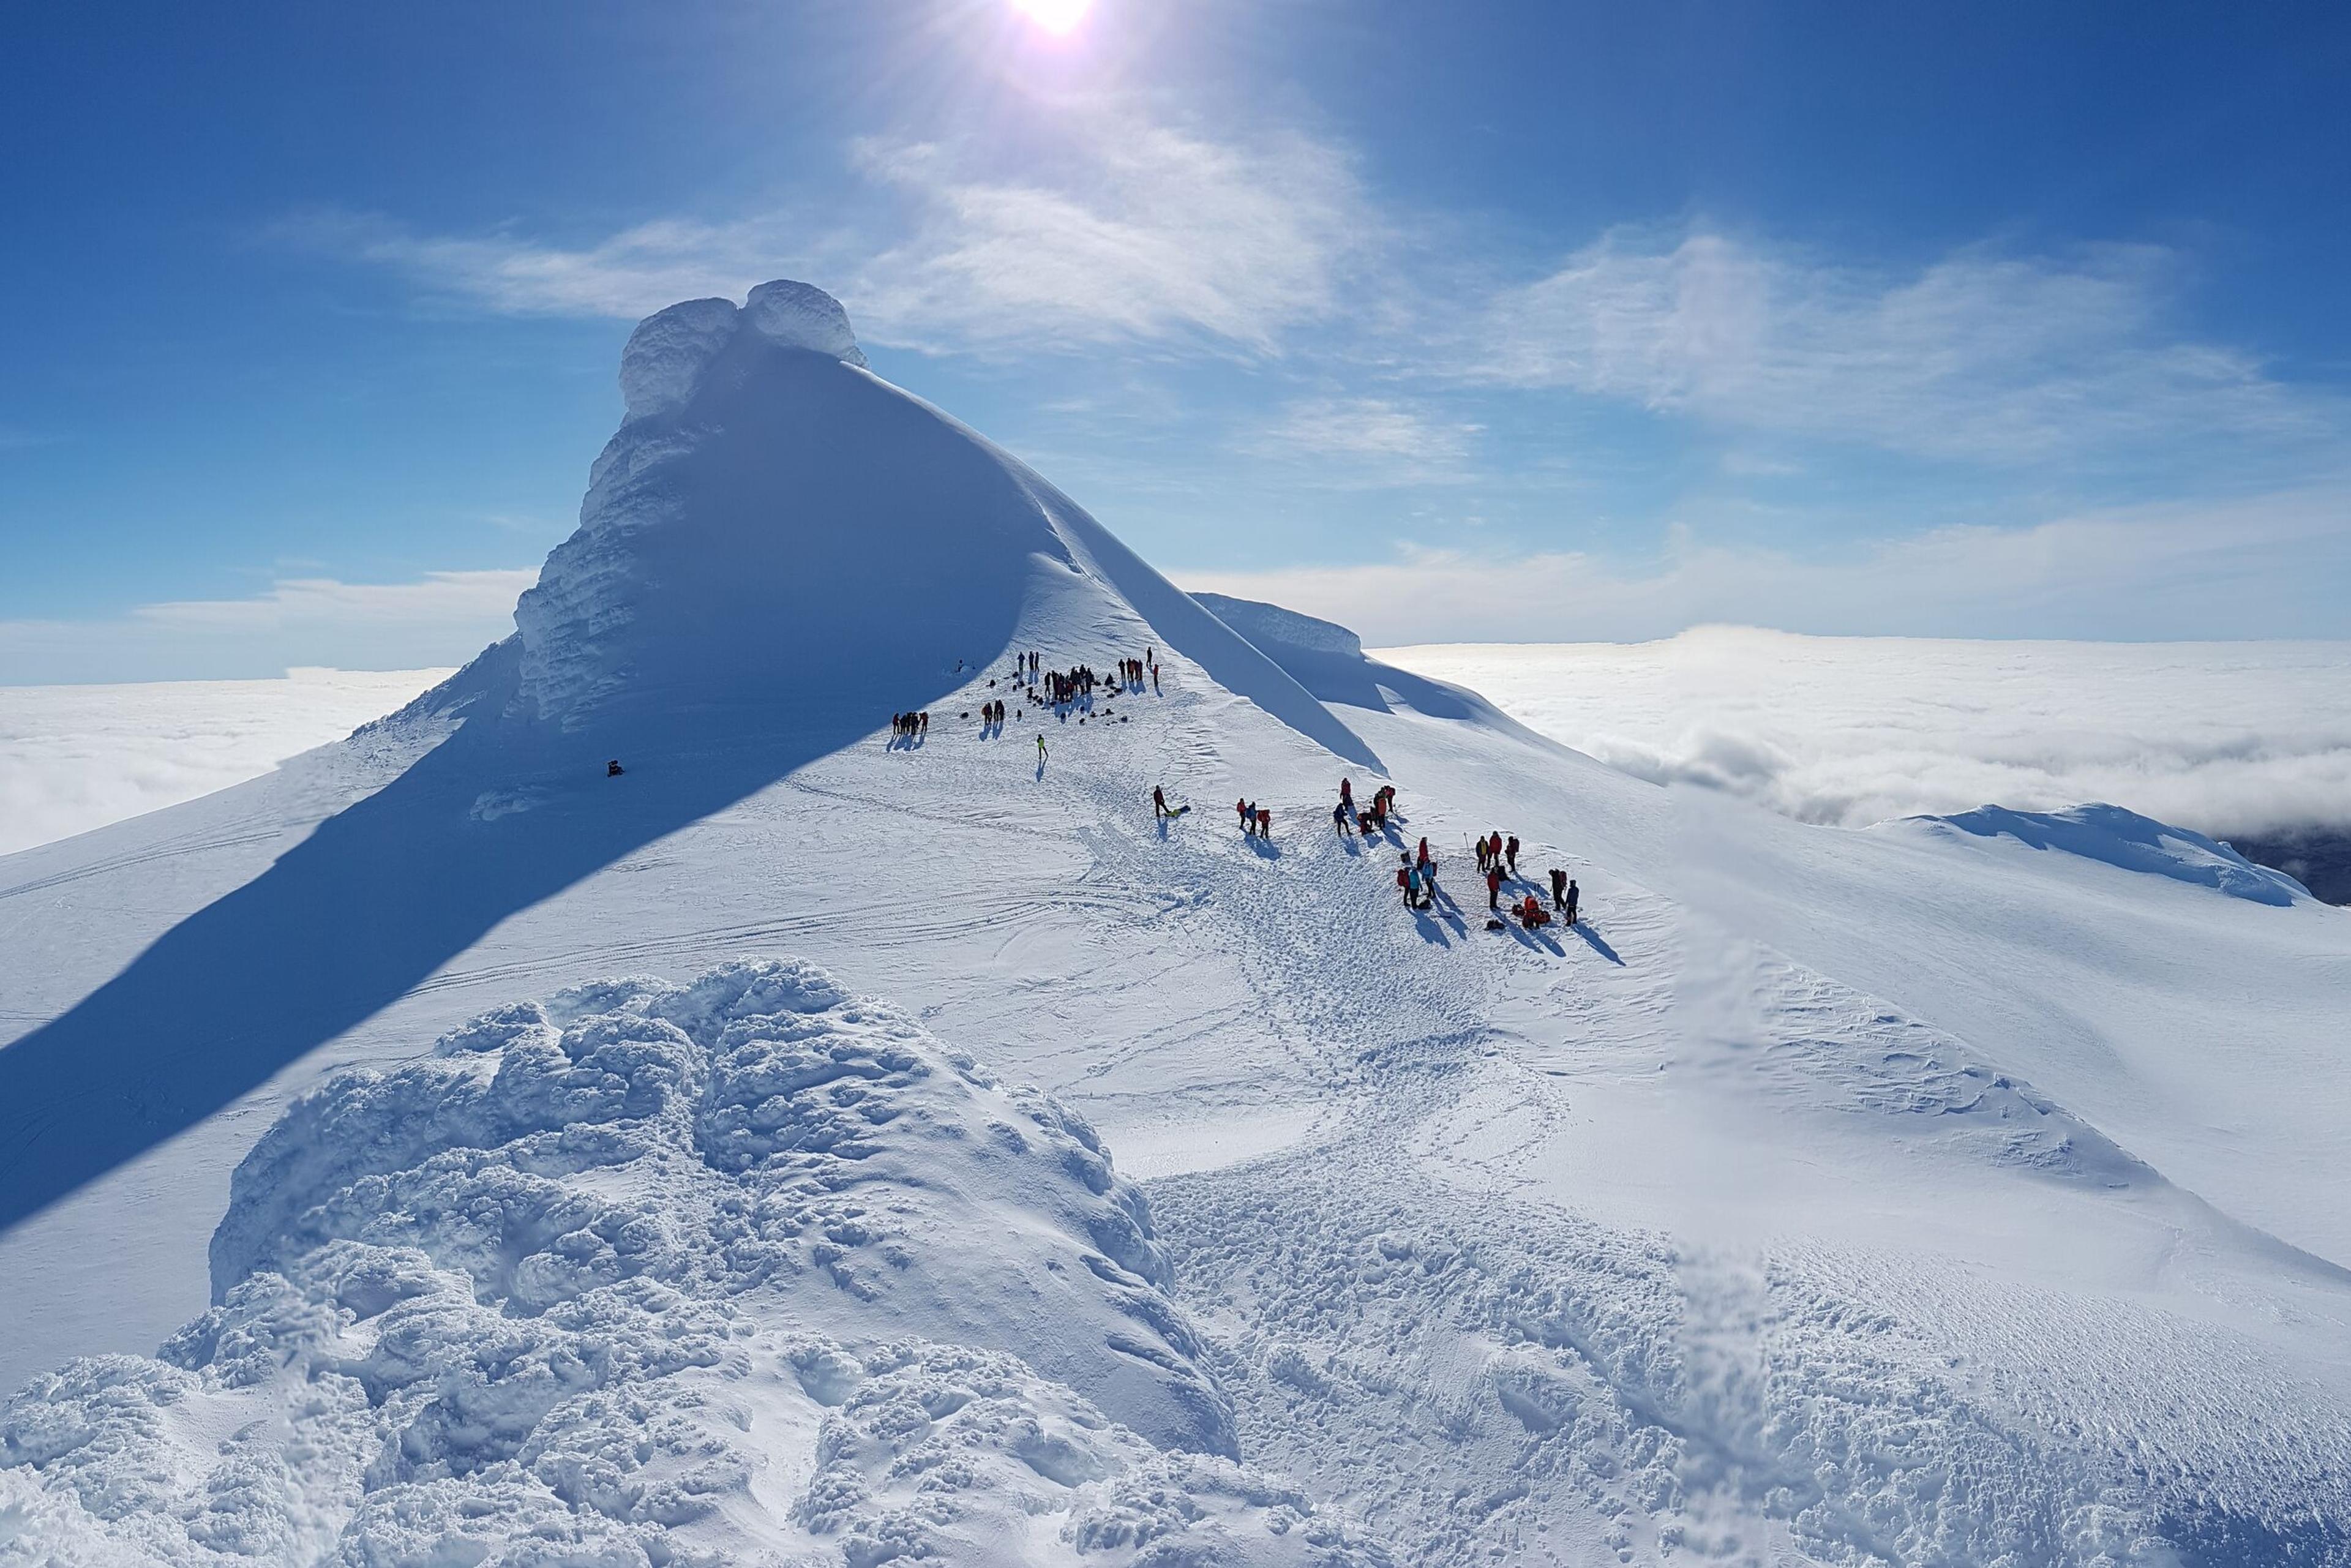 Group of hikers on top of Snæfellsjökull glacier.